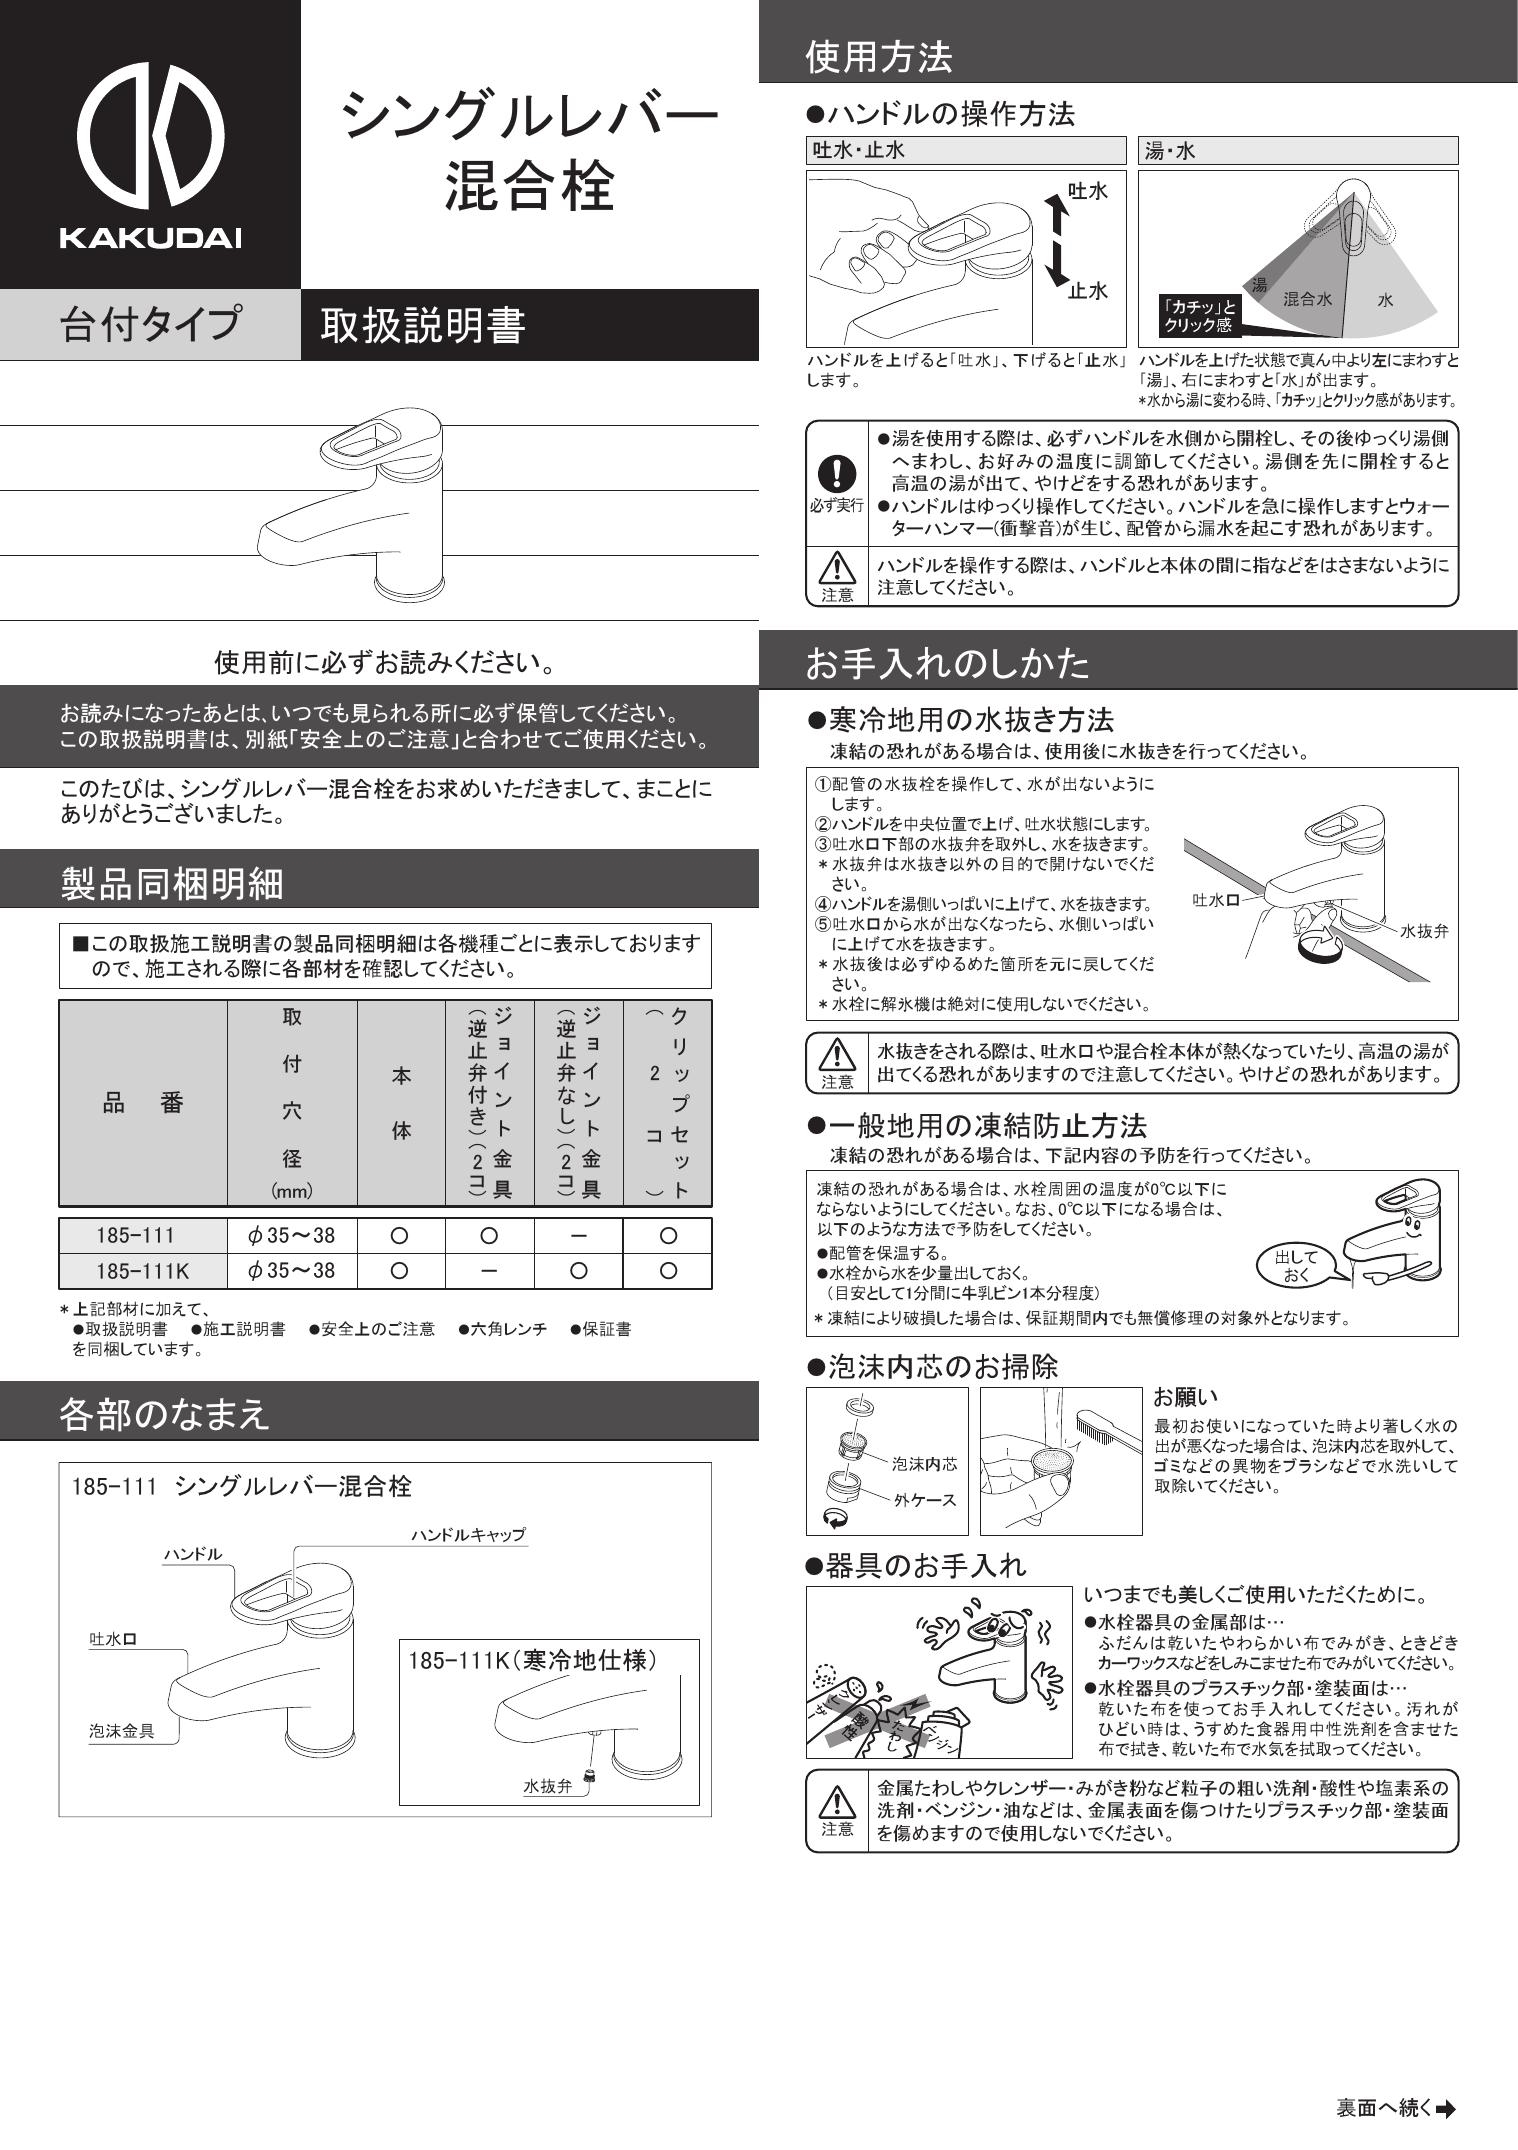 15304円 【公式】 カクダイ 185-204K シングルレバー混合栓 水栓金具